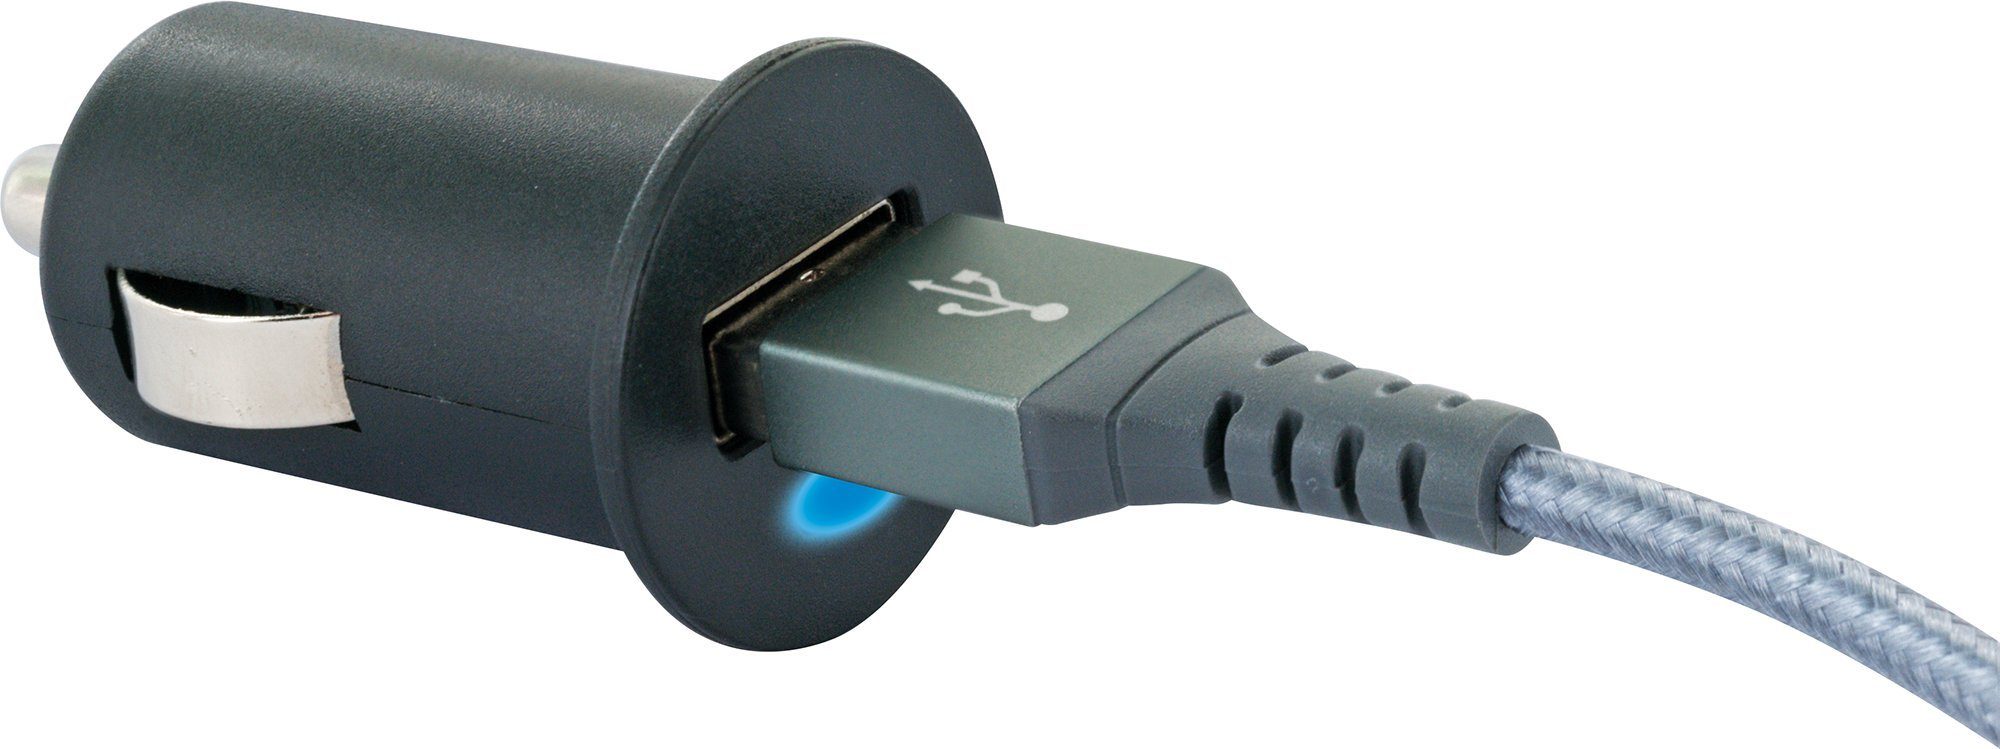 zu 2.0 integriertes KFZ-Adapter Buchse, USB Zigarettenanzünder A Multi-Schutz 533 Sicherheitssystem LAD13 Schwaiger